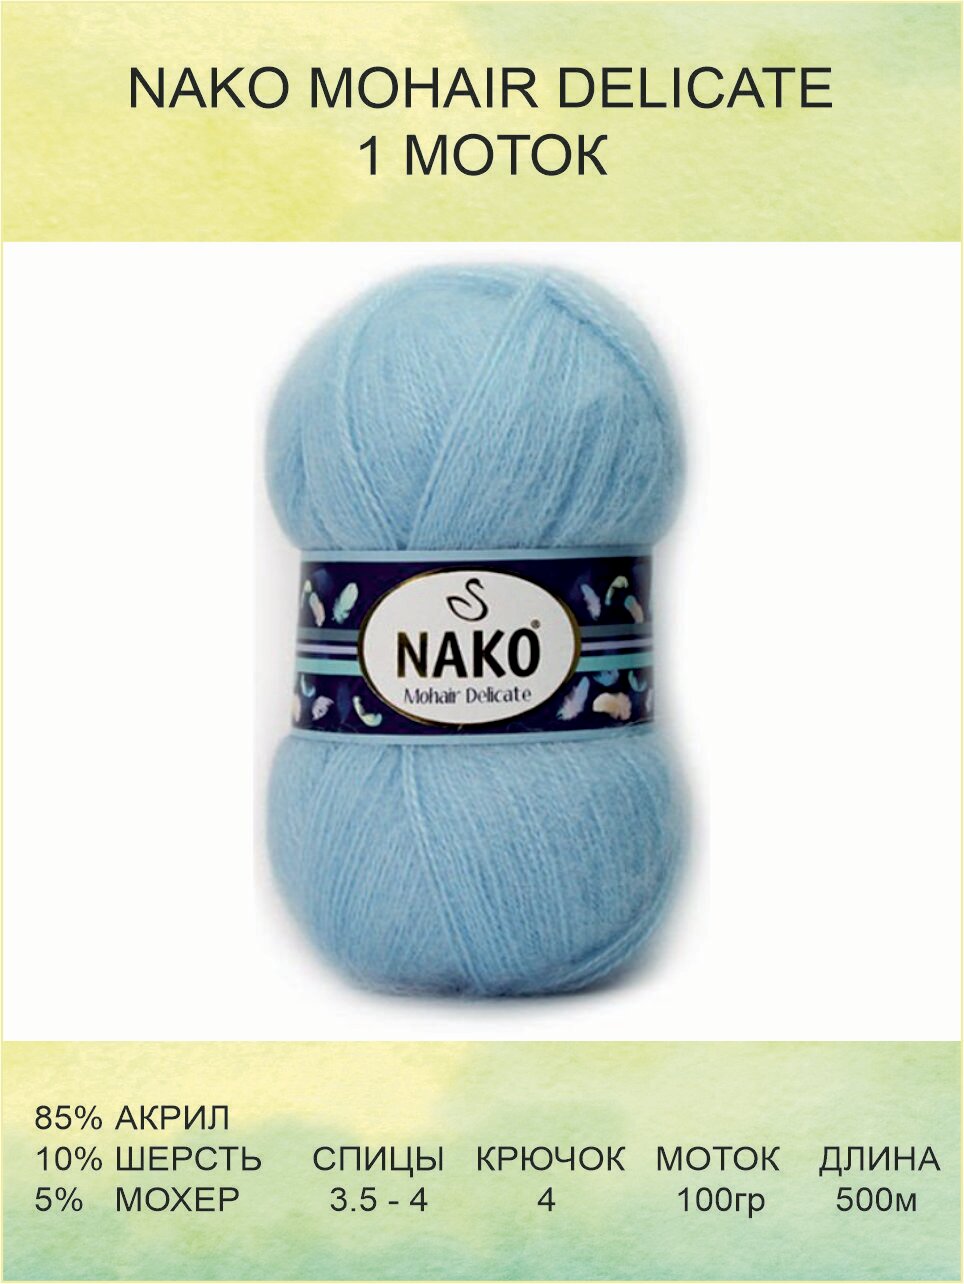 Пряжа для вязания Nako Mohair Delicate Нако Мохер Деликат: 00214 (голубой) / 1 шт / 500 м / 100 г / 5% мохер, 10% шерсть, 85% акрил премиум-класса